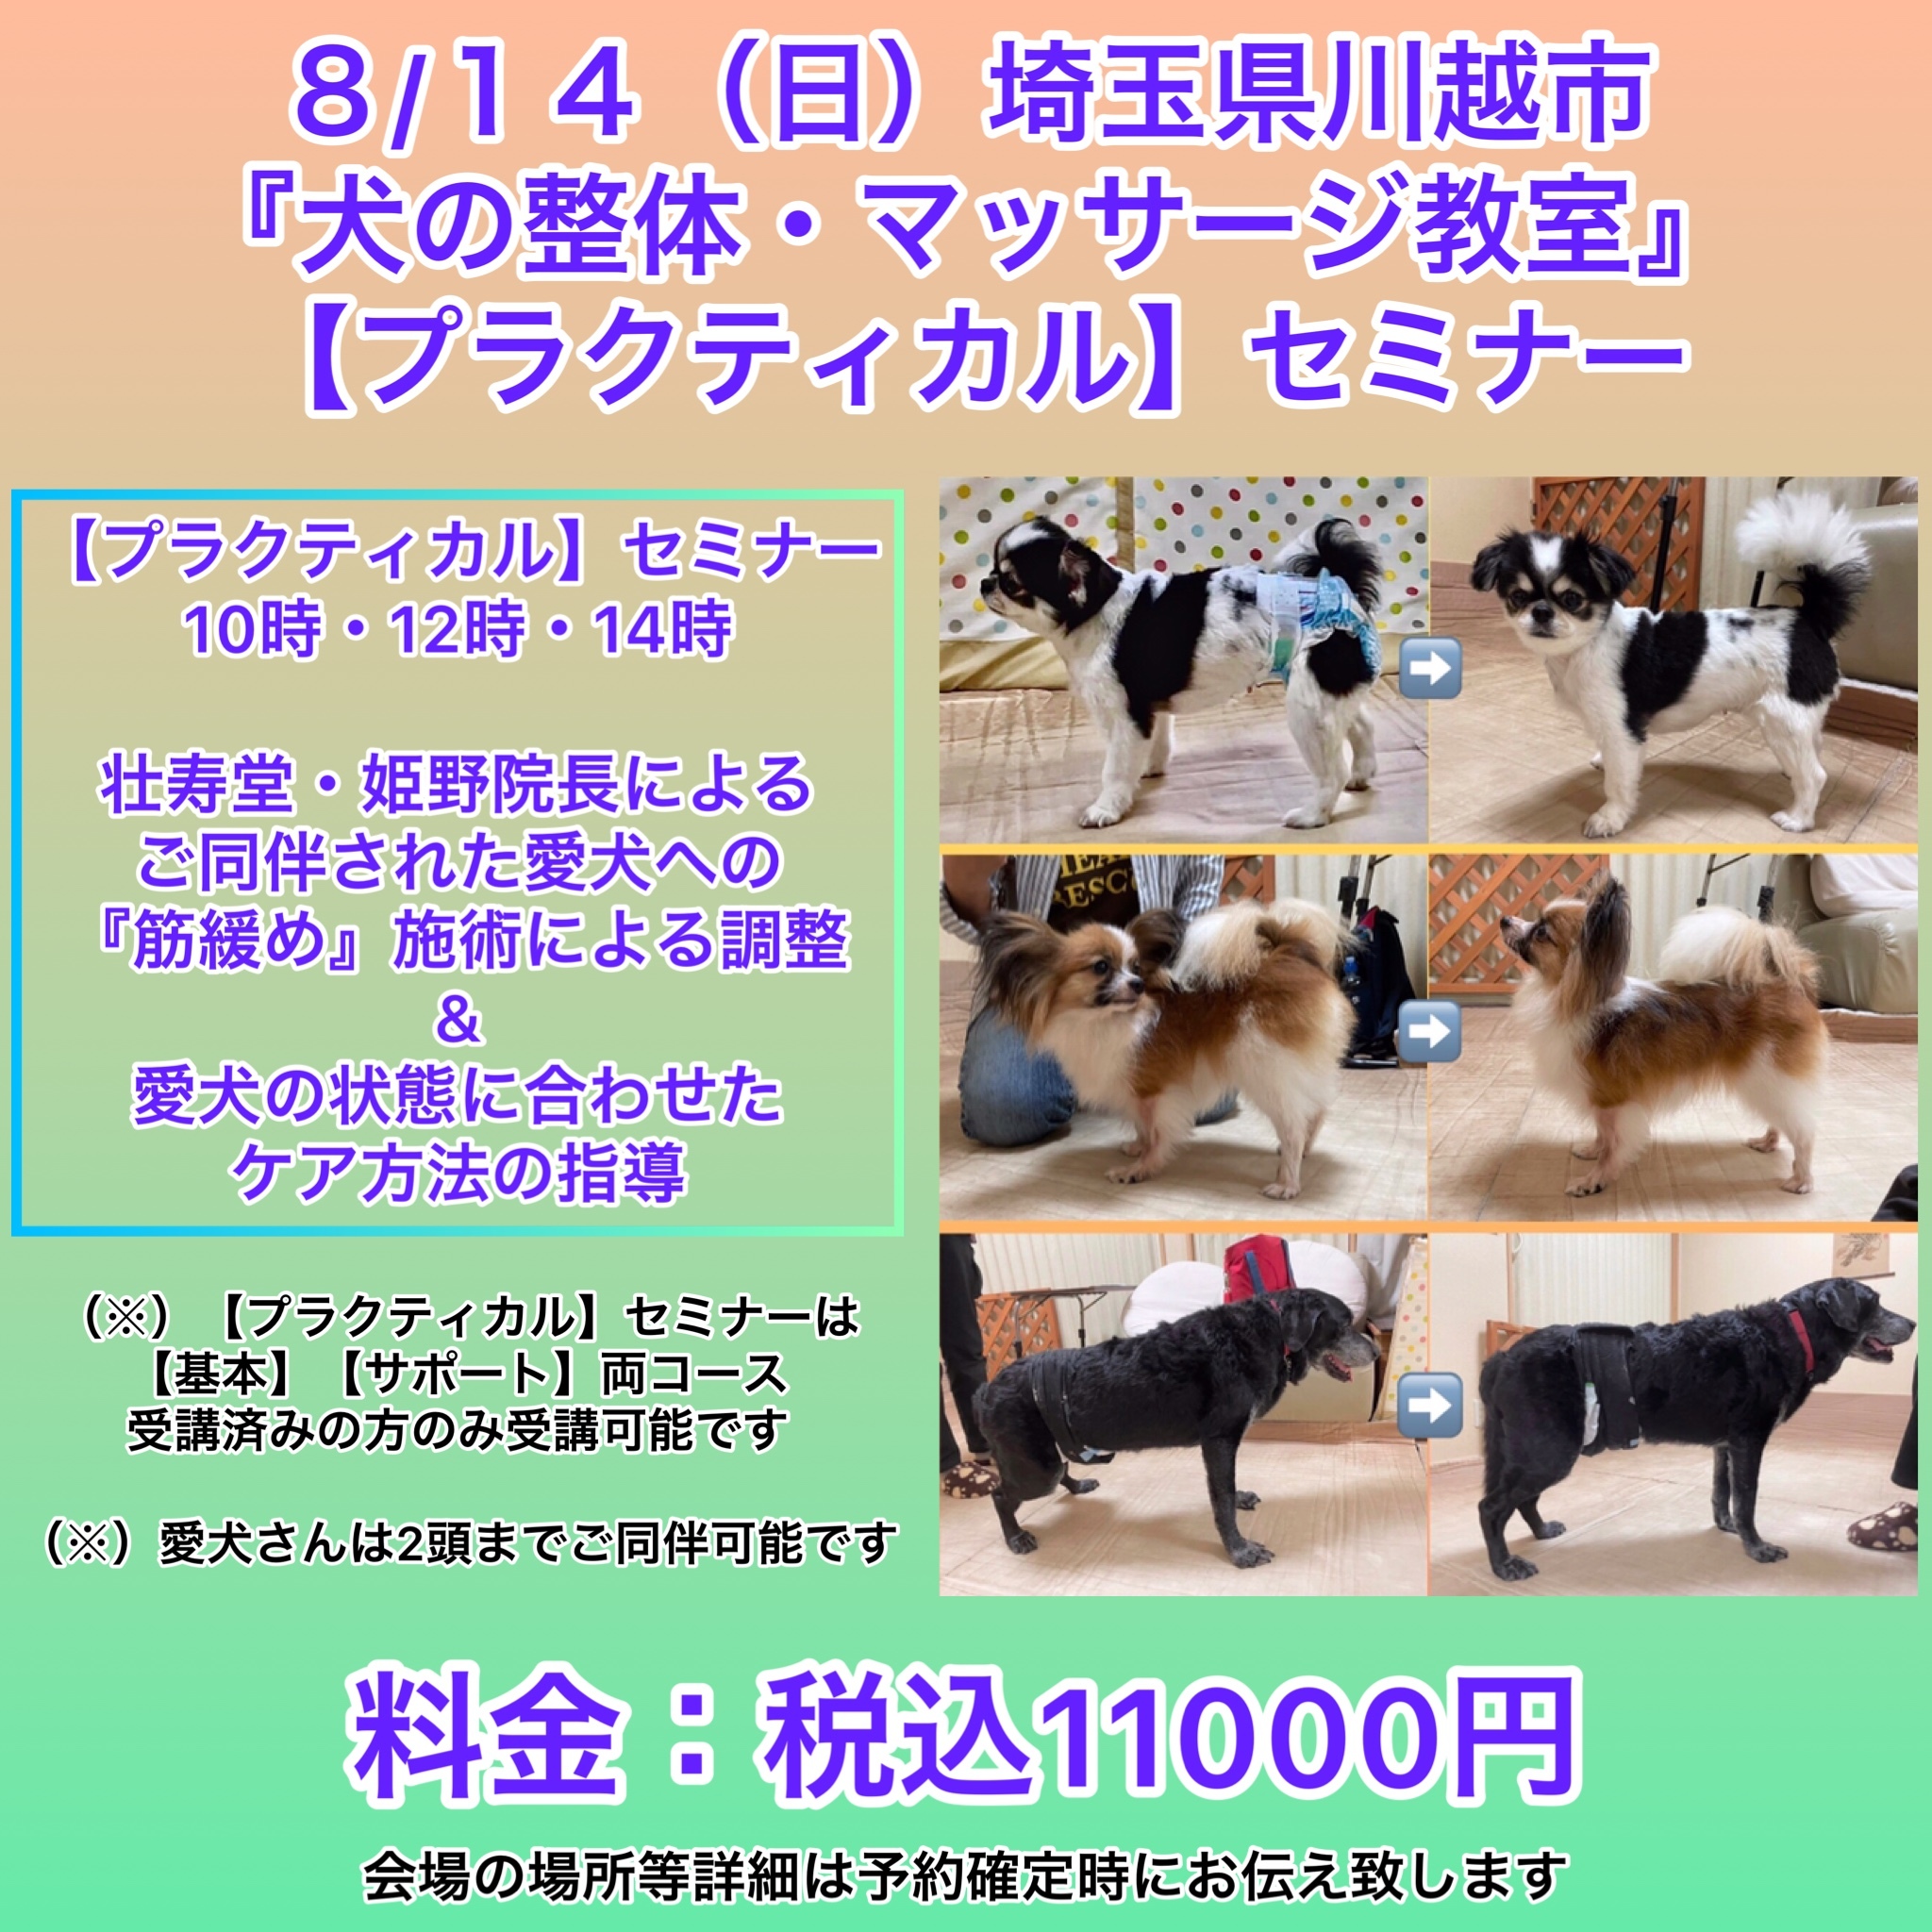 埼玉県開催犬の整体マッサージセミナー告知